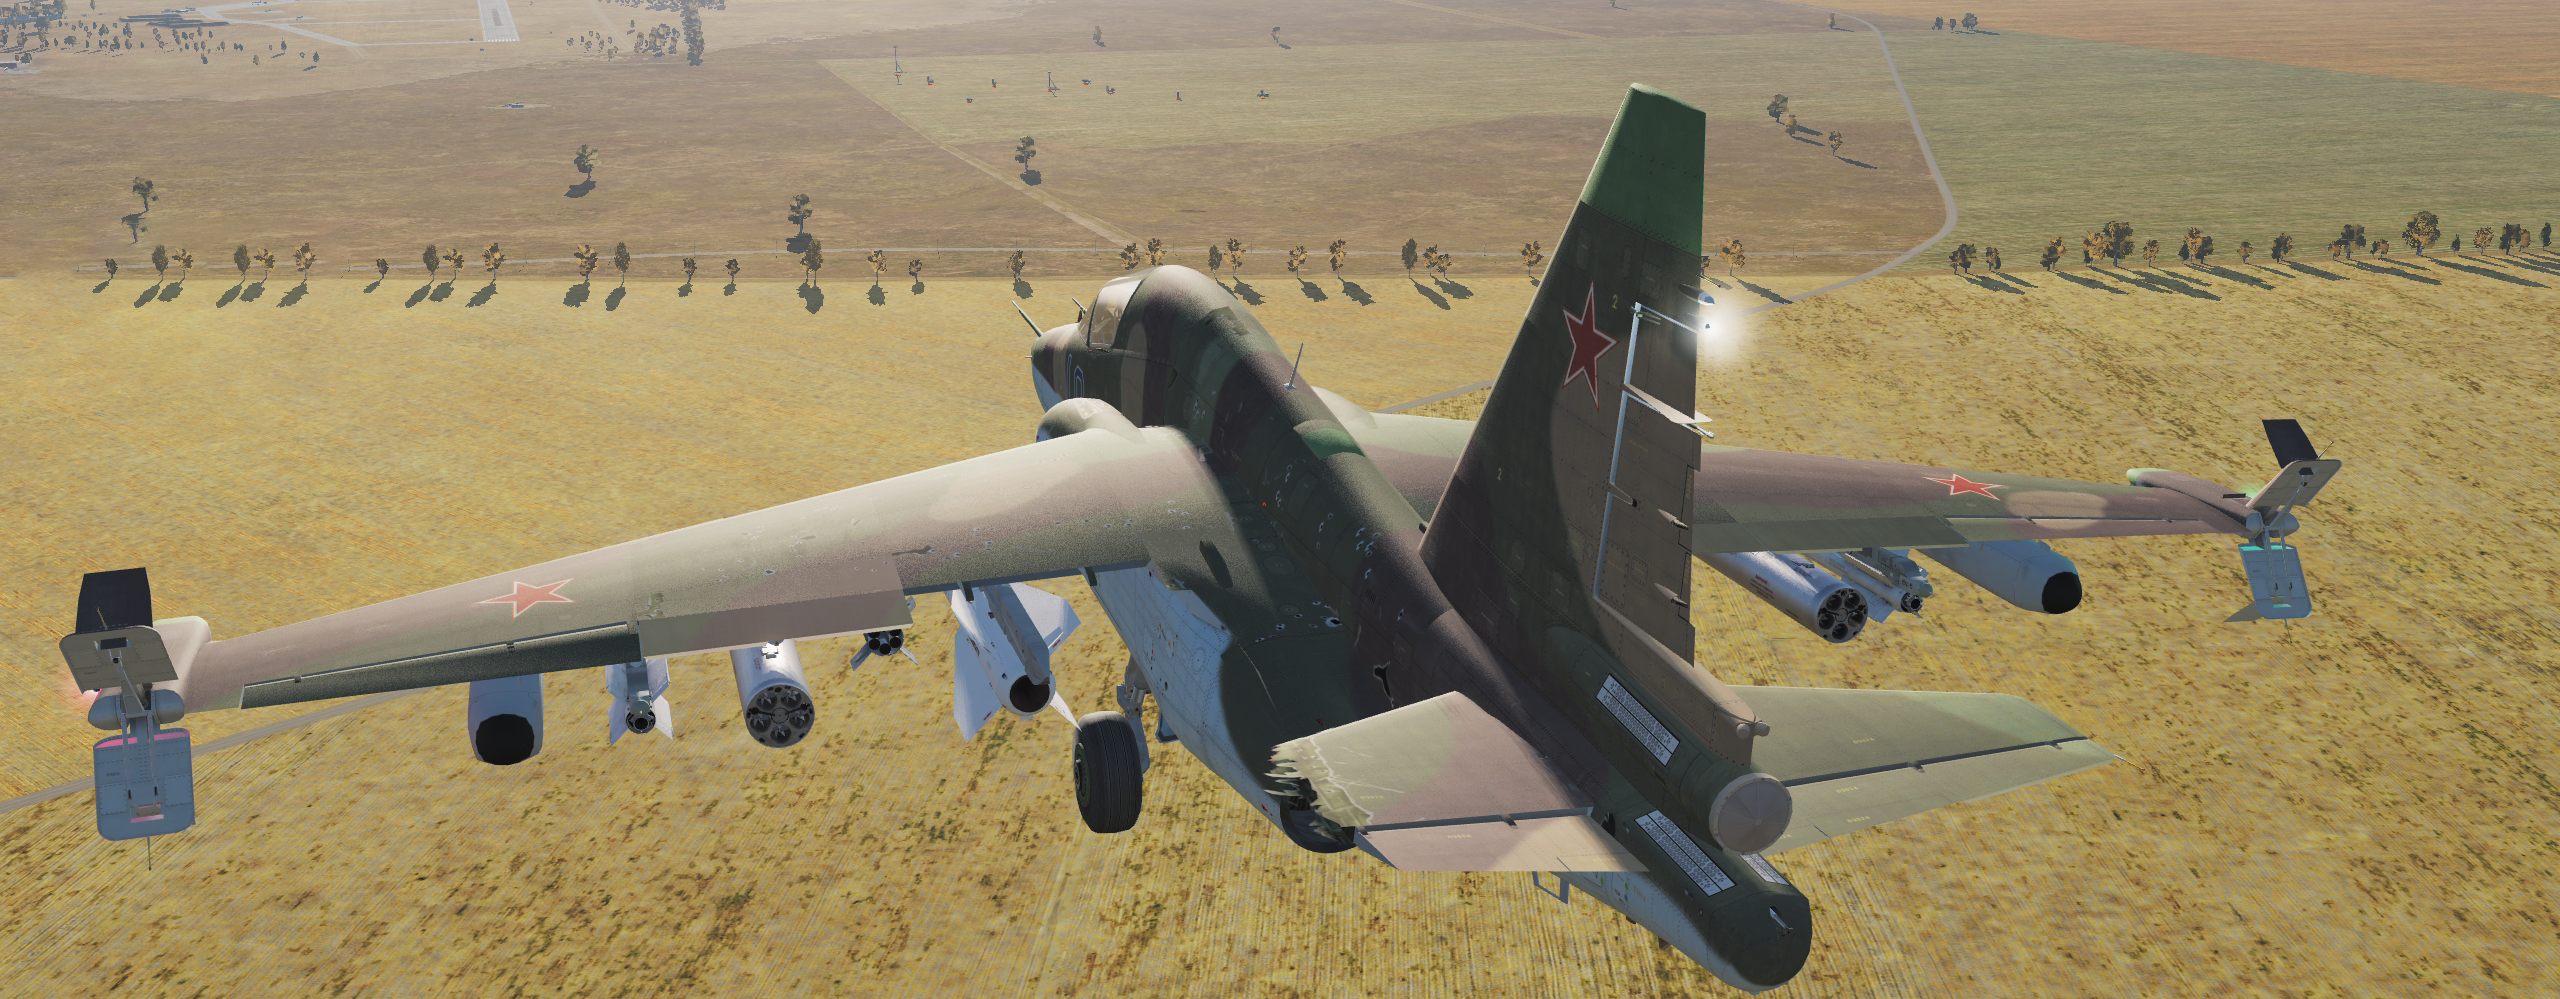 SU-25T Instruments